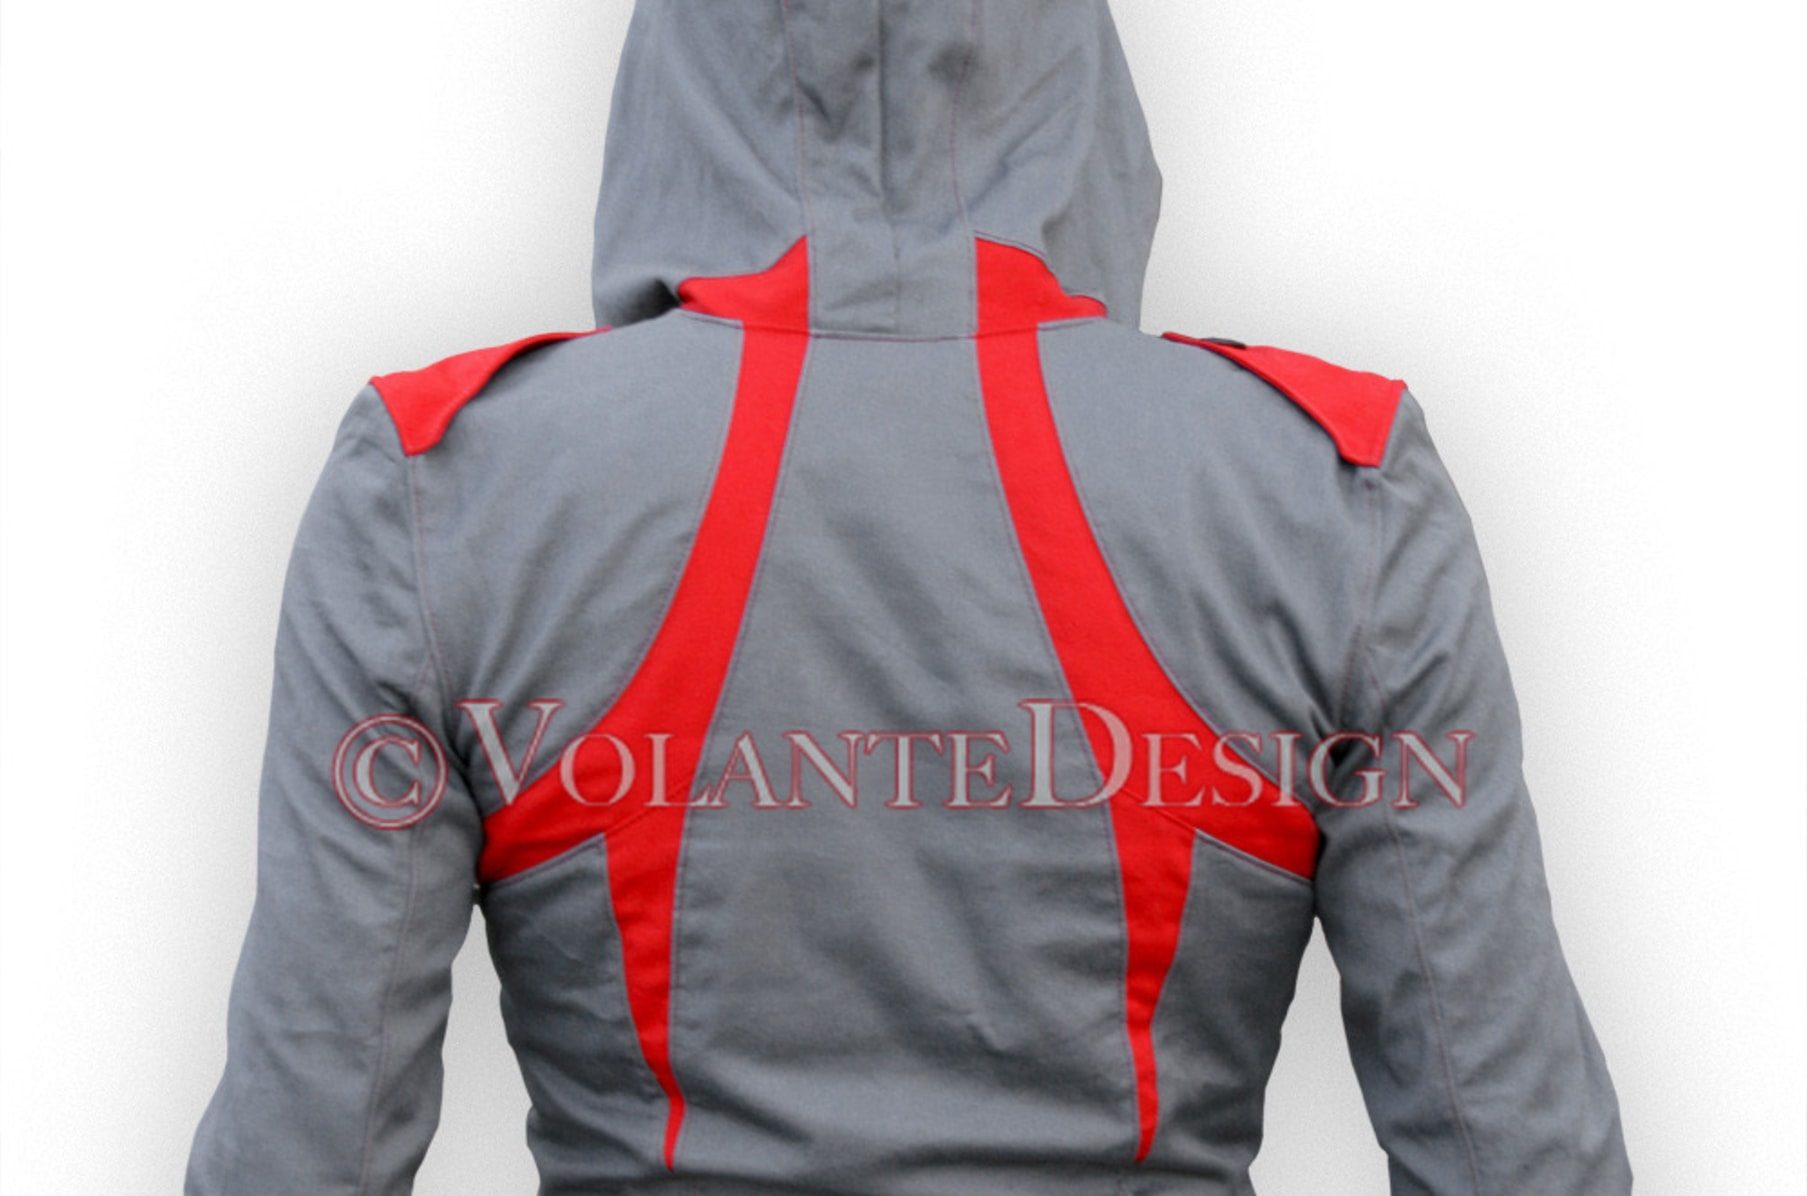 Assassin's Creed – Volante Design